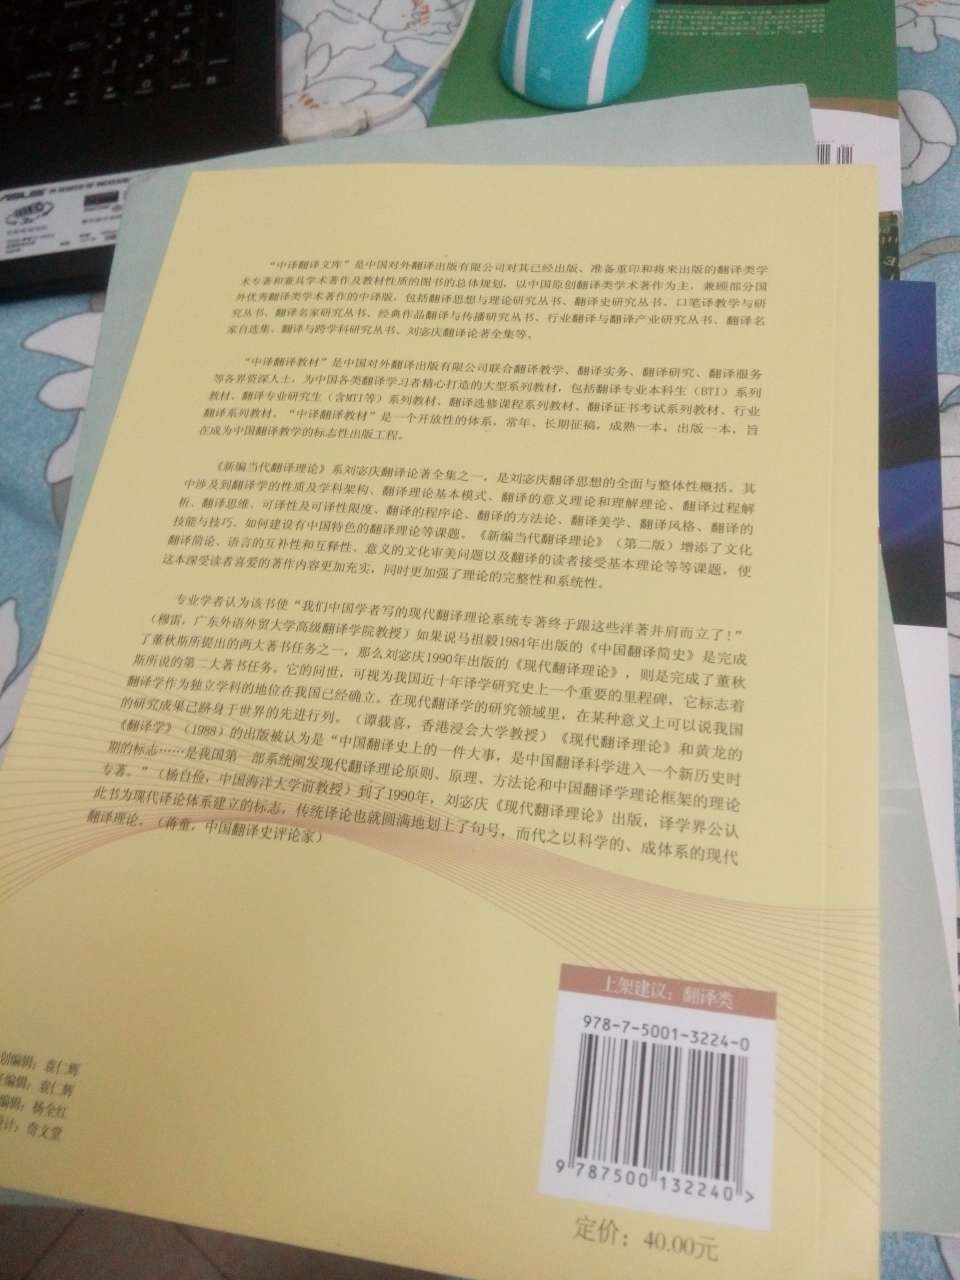 嗯，这本翻译的书还不错吧，现在正打算学习翻译，整一个比较统一的翻译方面的理论